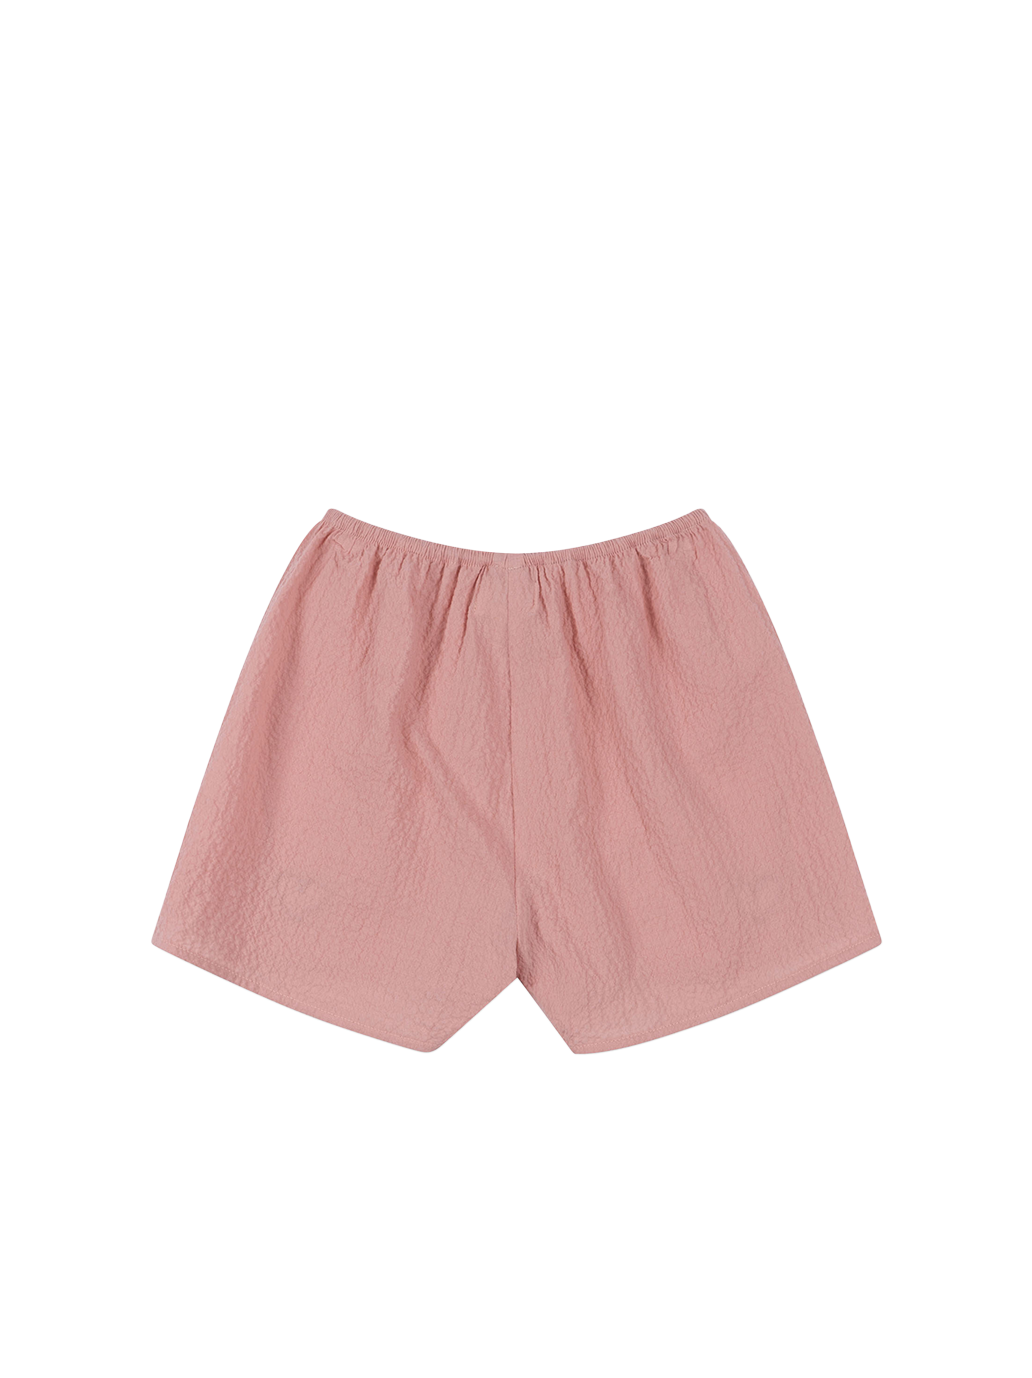 Ava slit shorts